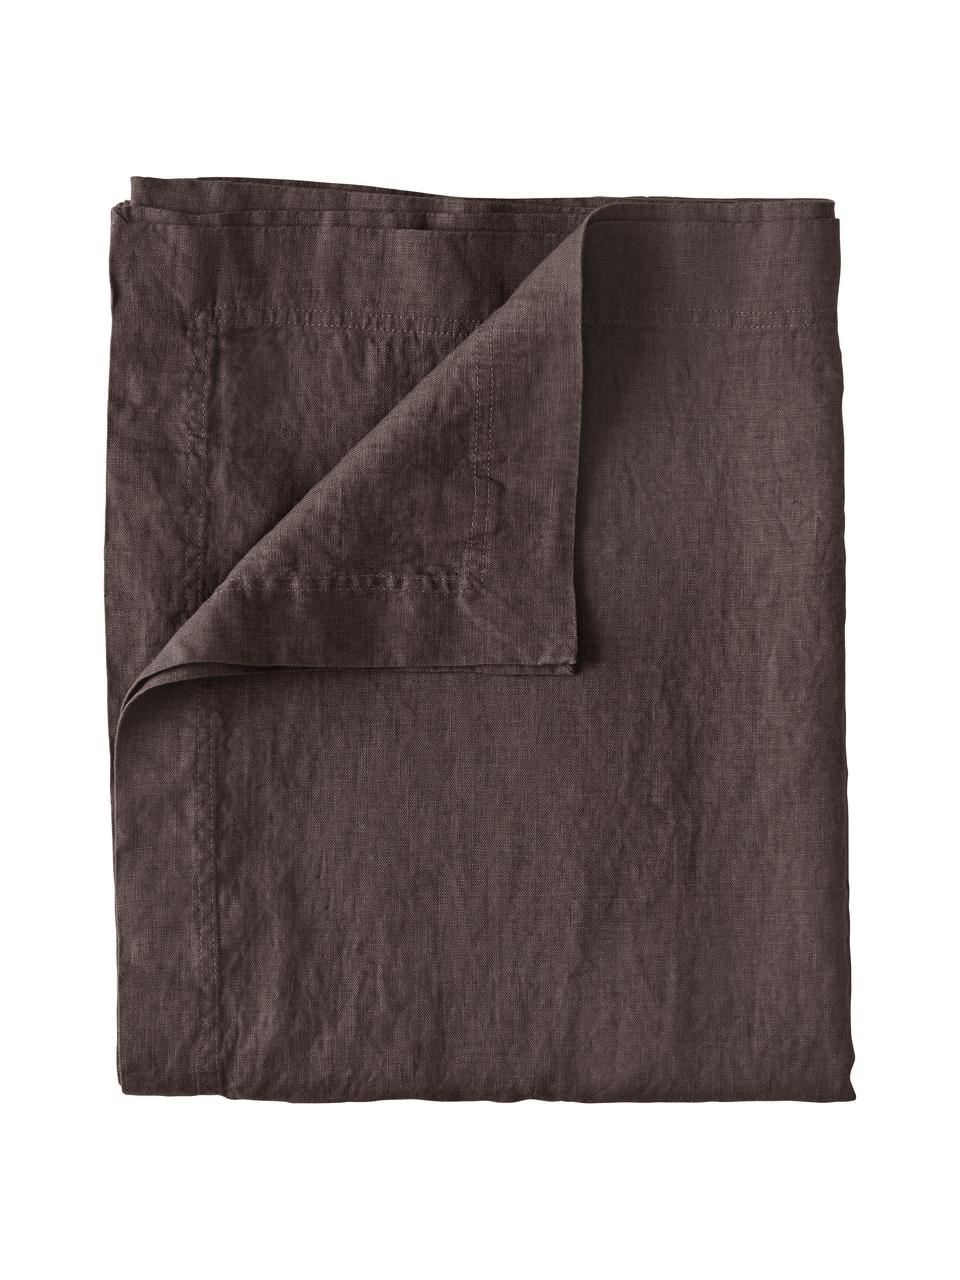 Tovaglia in lino nero Duk, 100% lino, Marrone scuro, Per 6 - 10 persone (Larg. 135 x Lung. 250 cm)